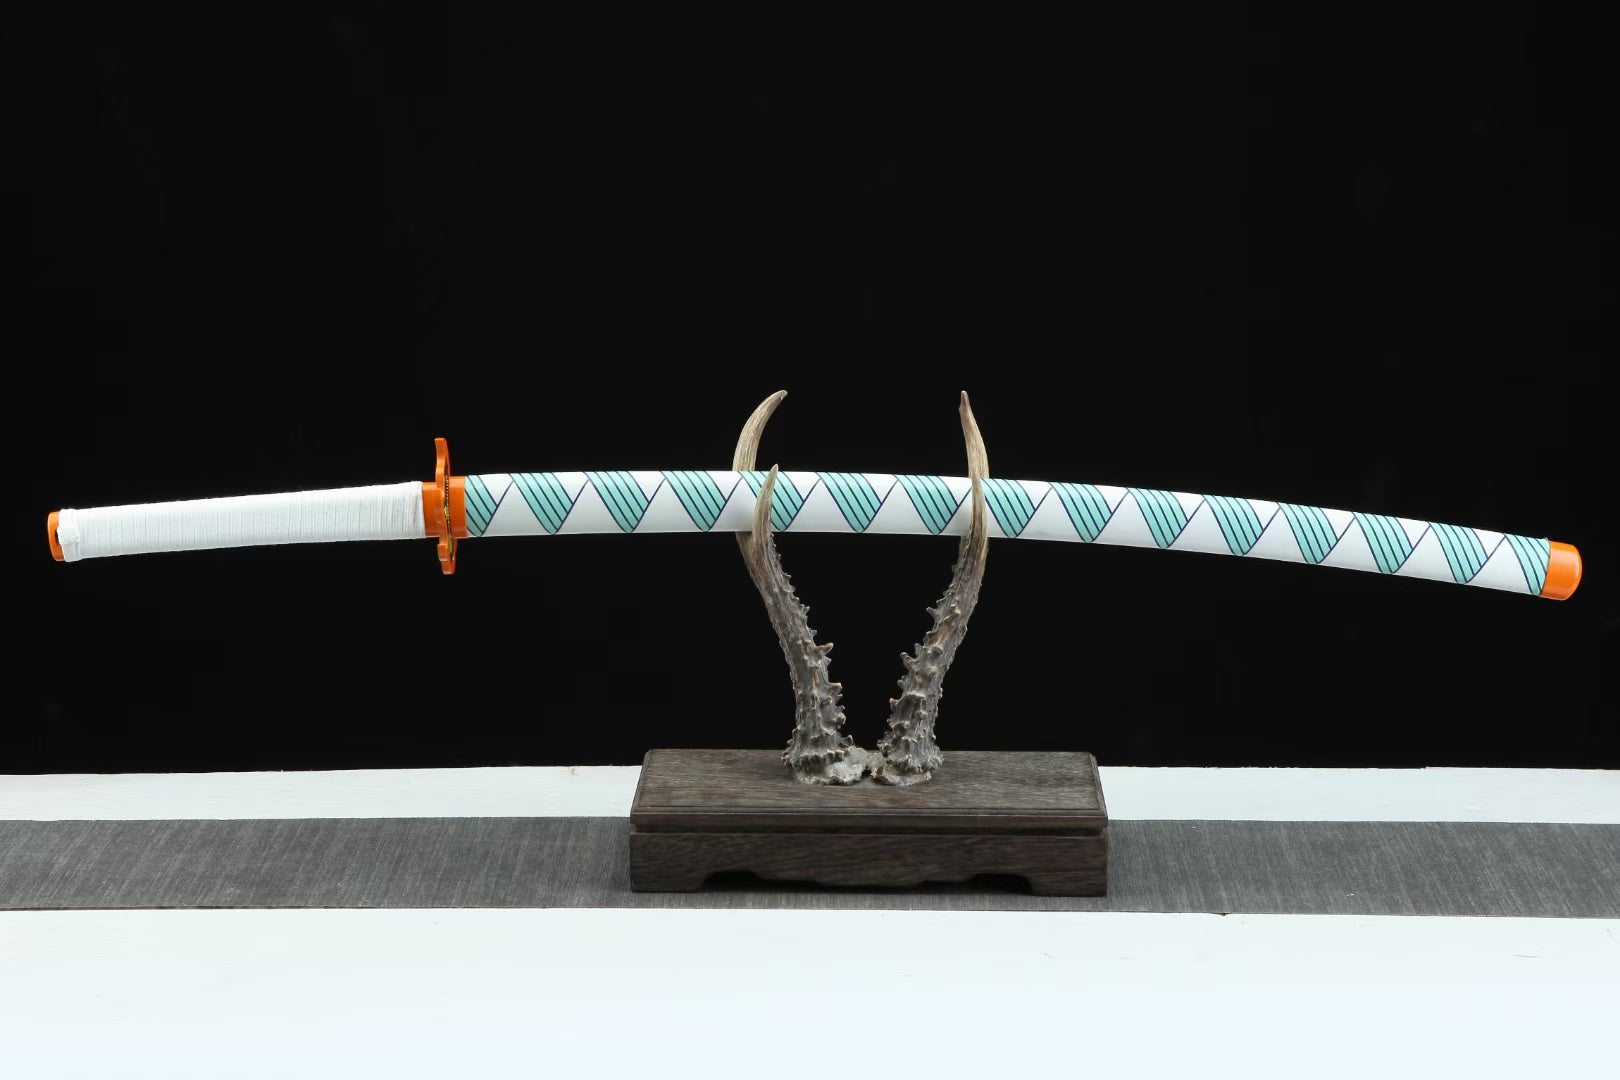 1045 steel samurai sword,demon slayer sword,comic katana Rengoku swords hansi sword